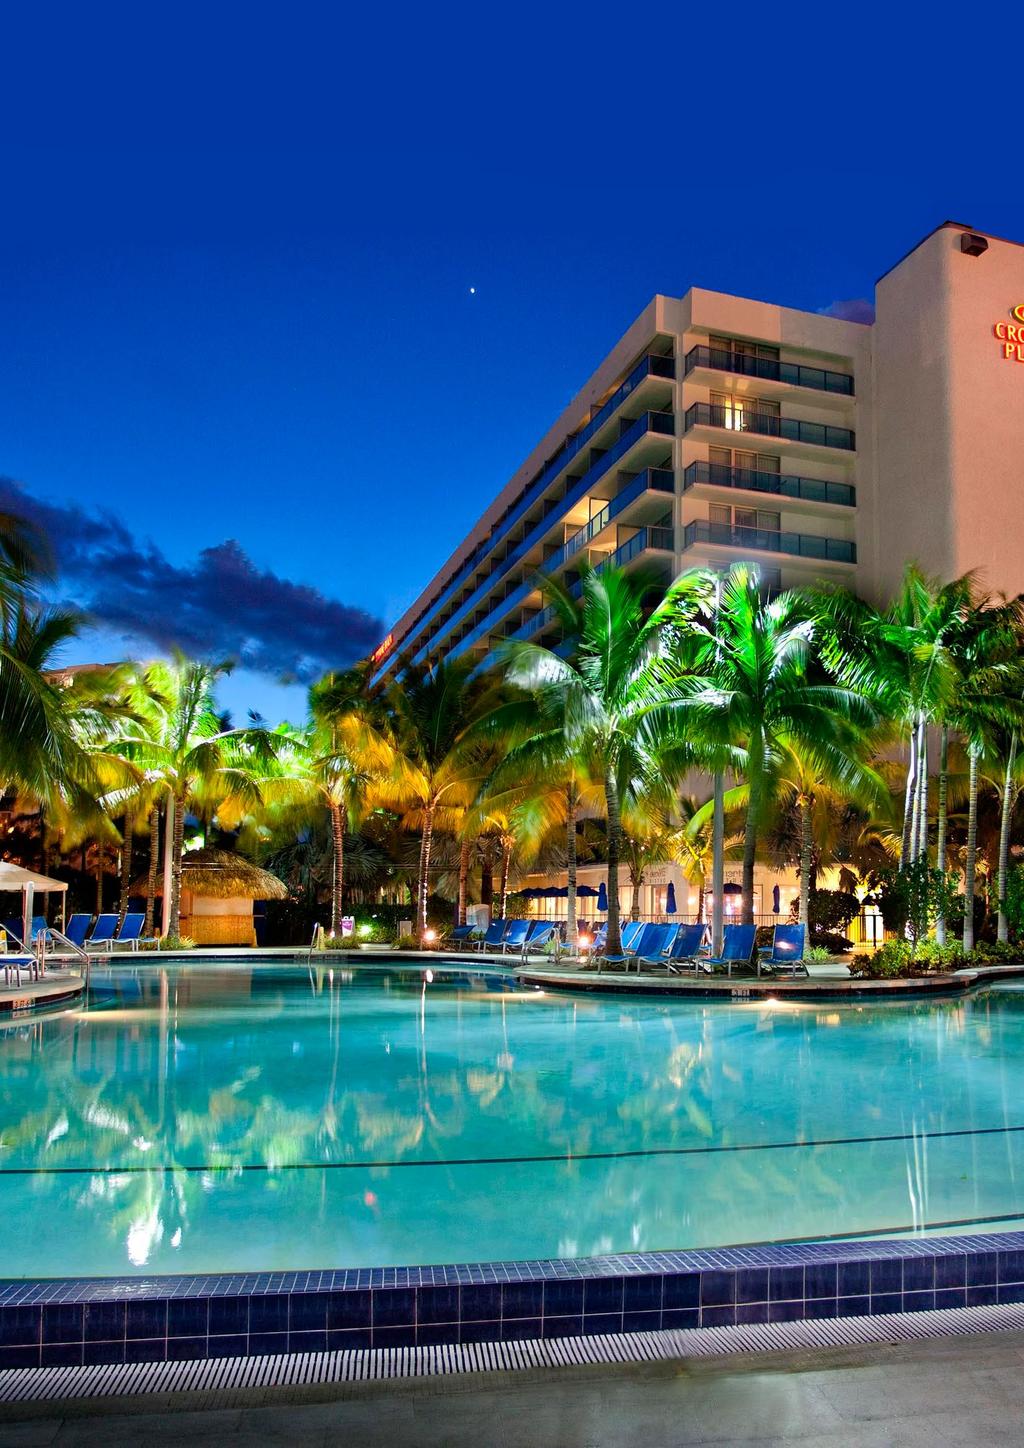 El Lugar Crowne Plaza Hollywood Beach Miami Disfrute de un ambiente de lujo y relajado estilo resort comodidades en el hotel Crowne Plaza Hollywood Beach.